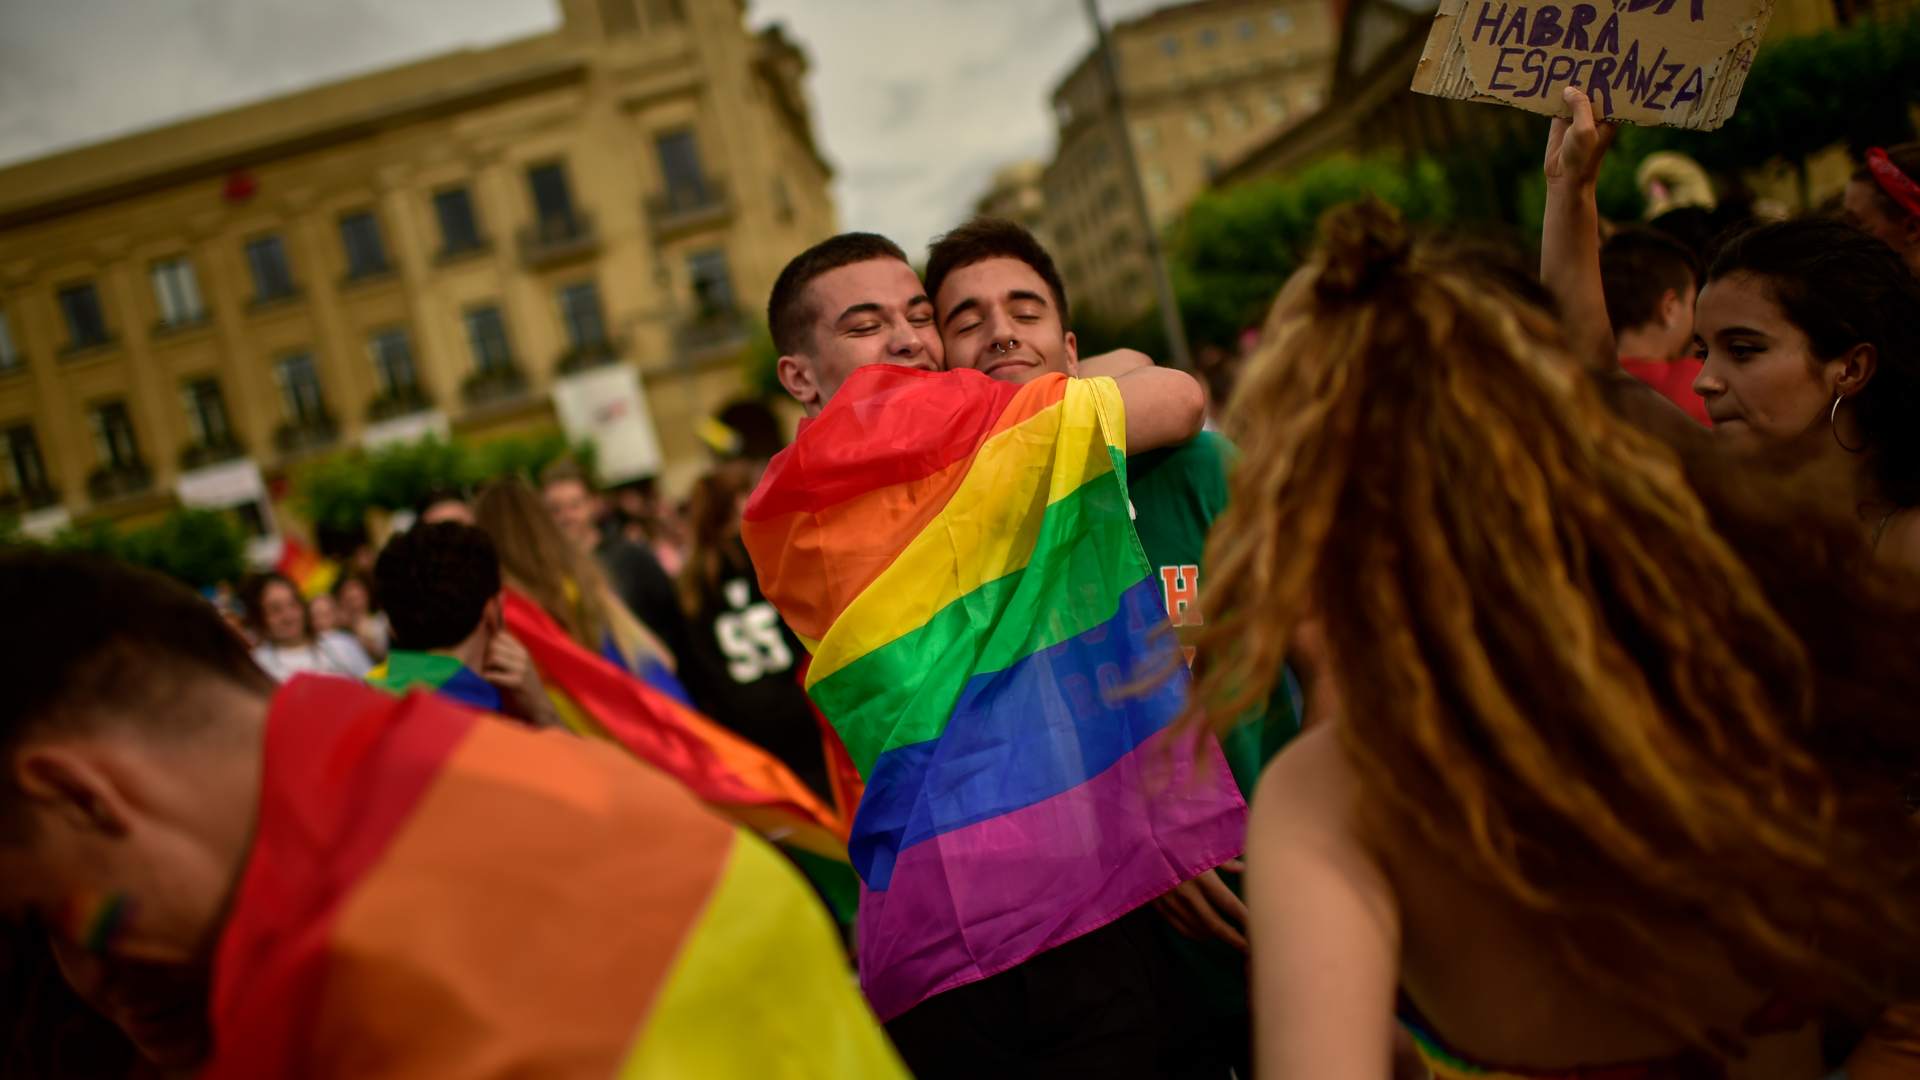 La región de Madrid registró en 2018 un 7,5% más de incidentes de odio por LGTBfobia que en 2017